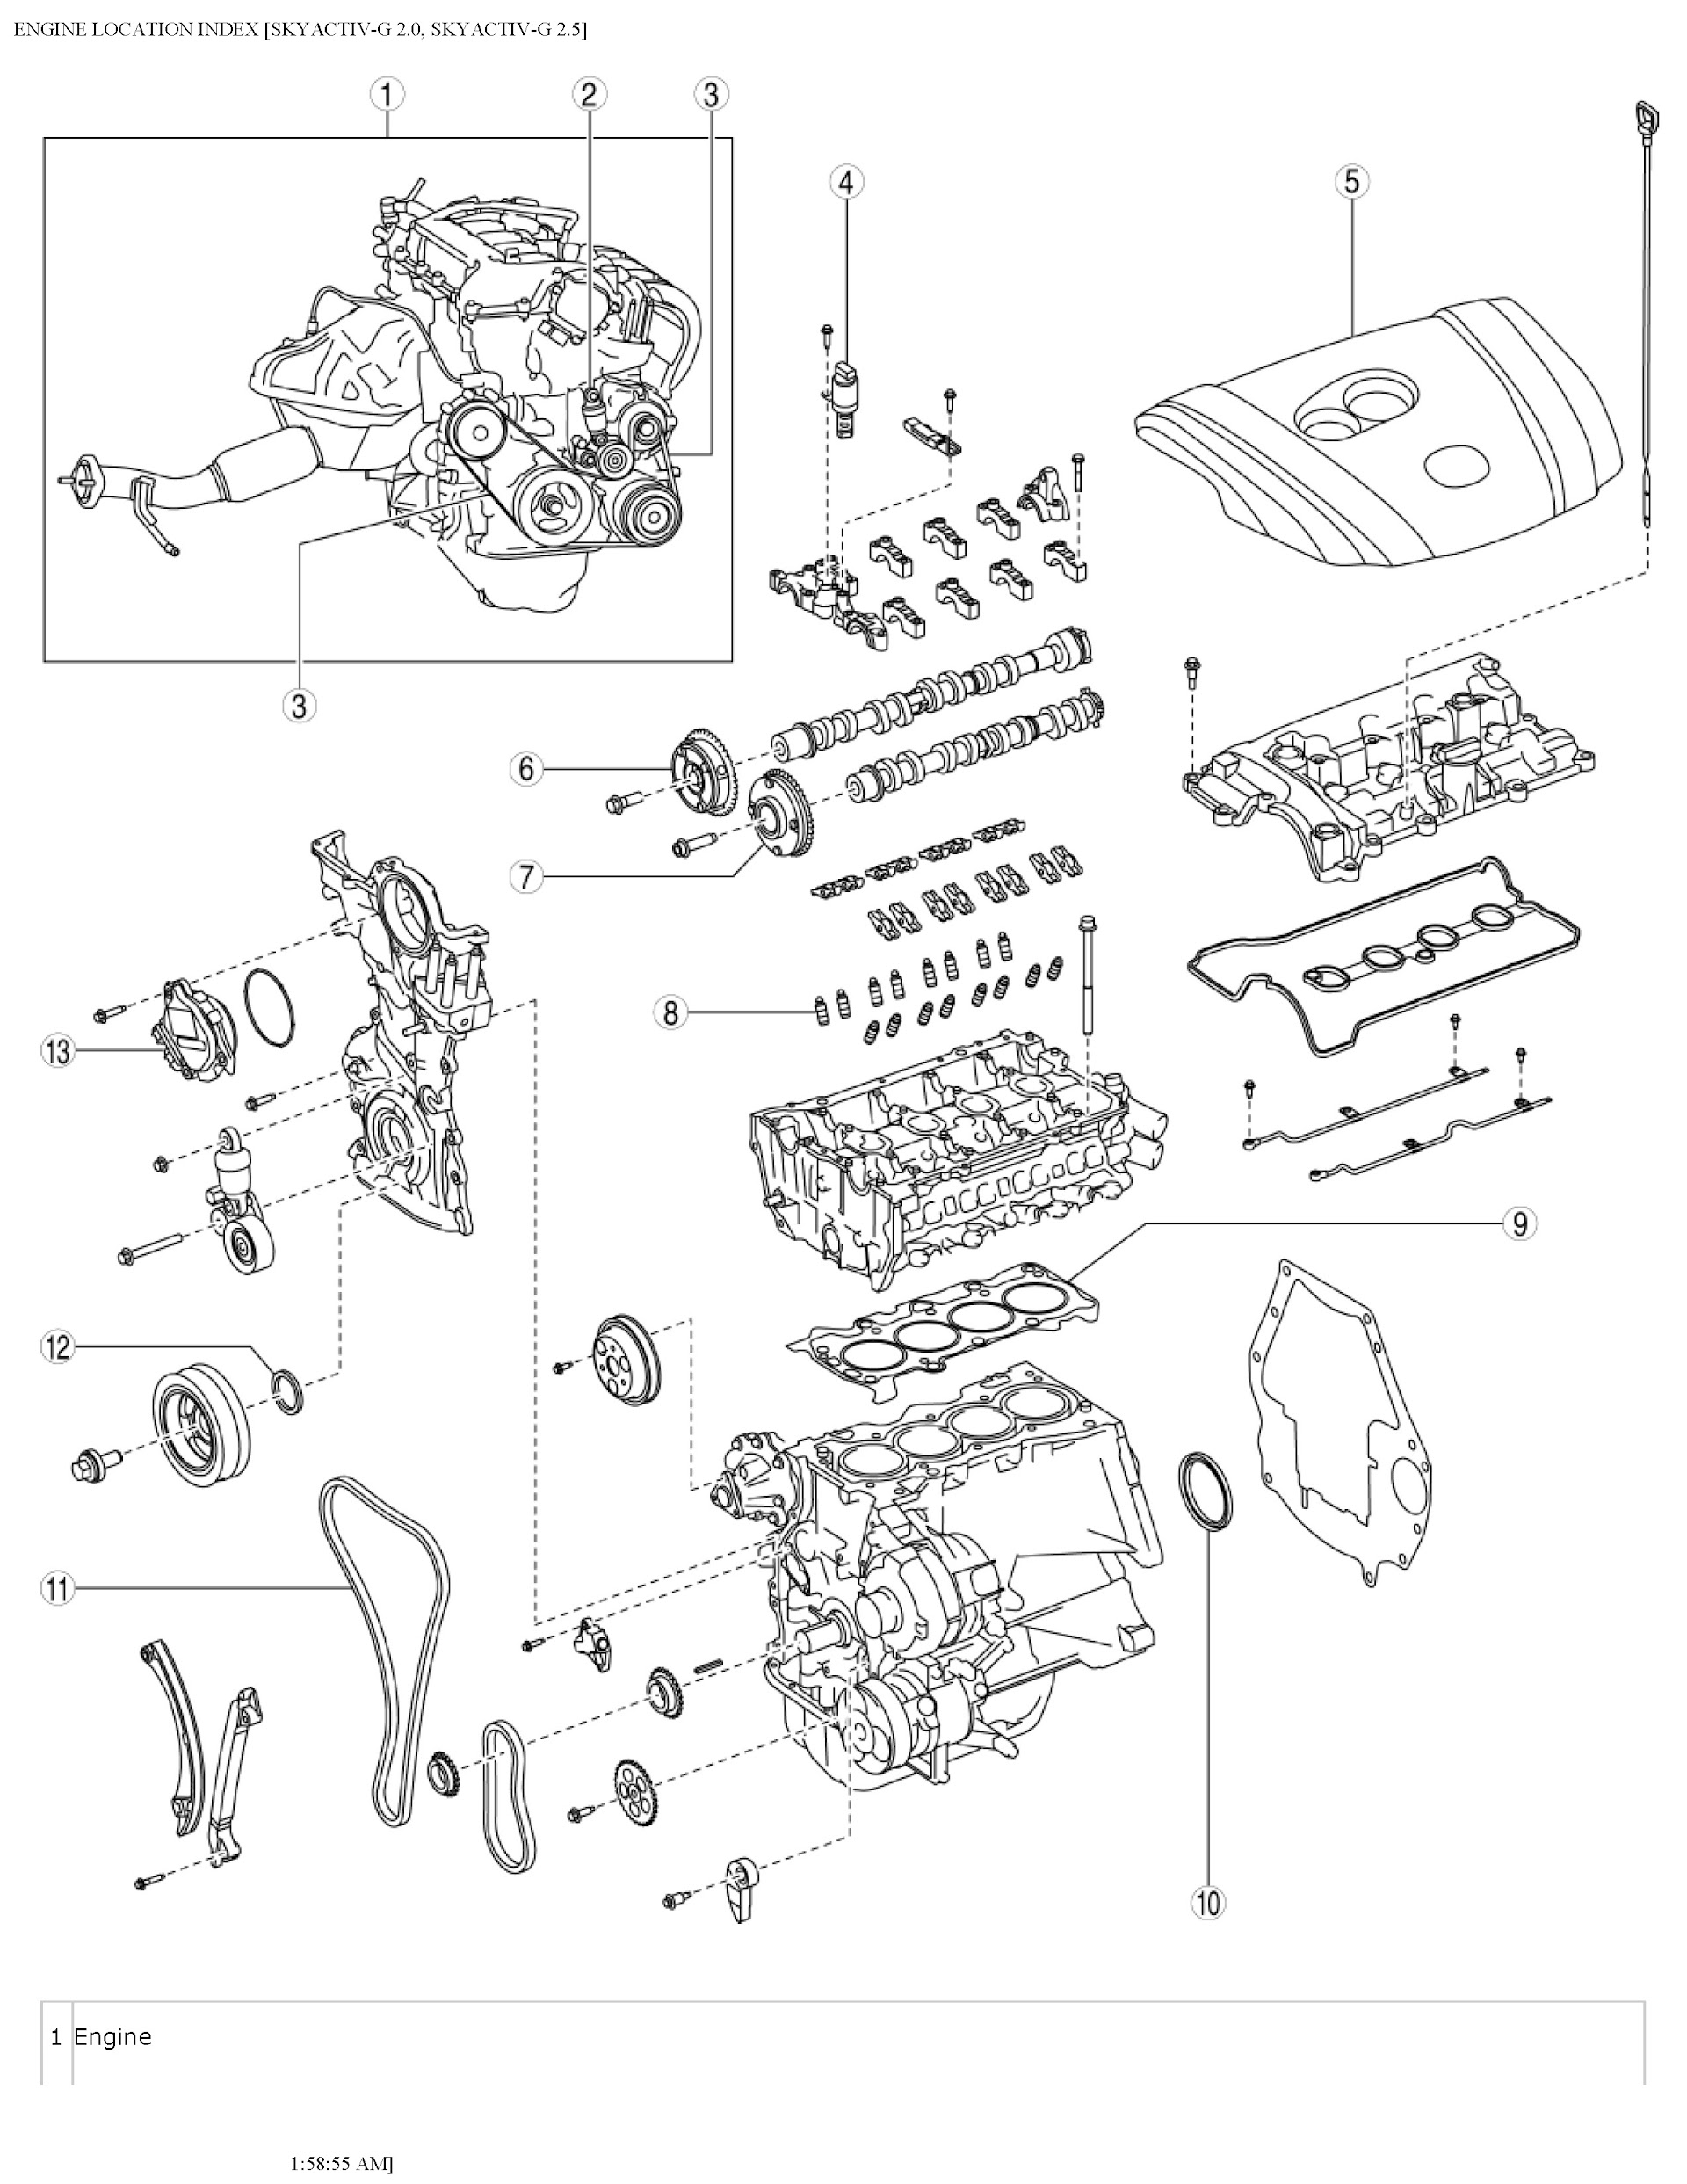 Download 2014 Mazda 3 Service Repair Manual.